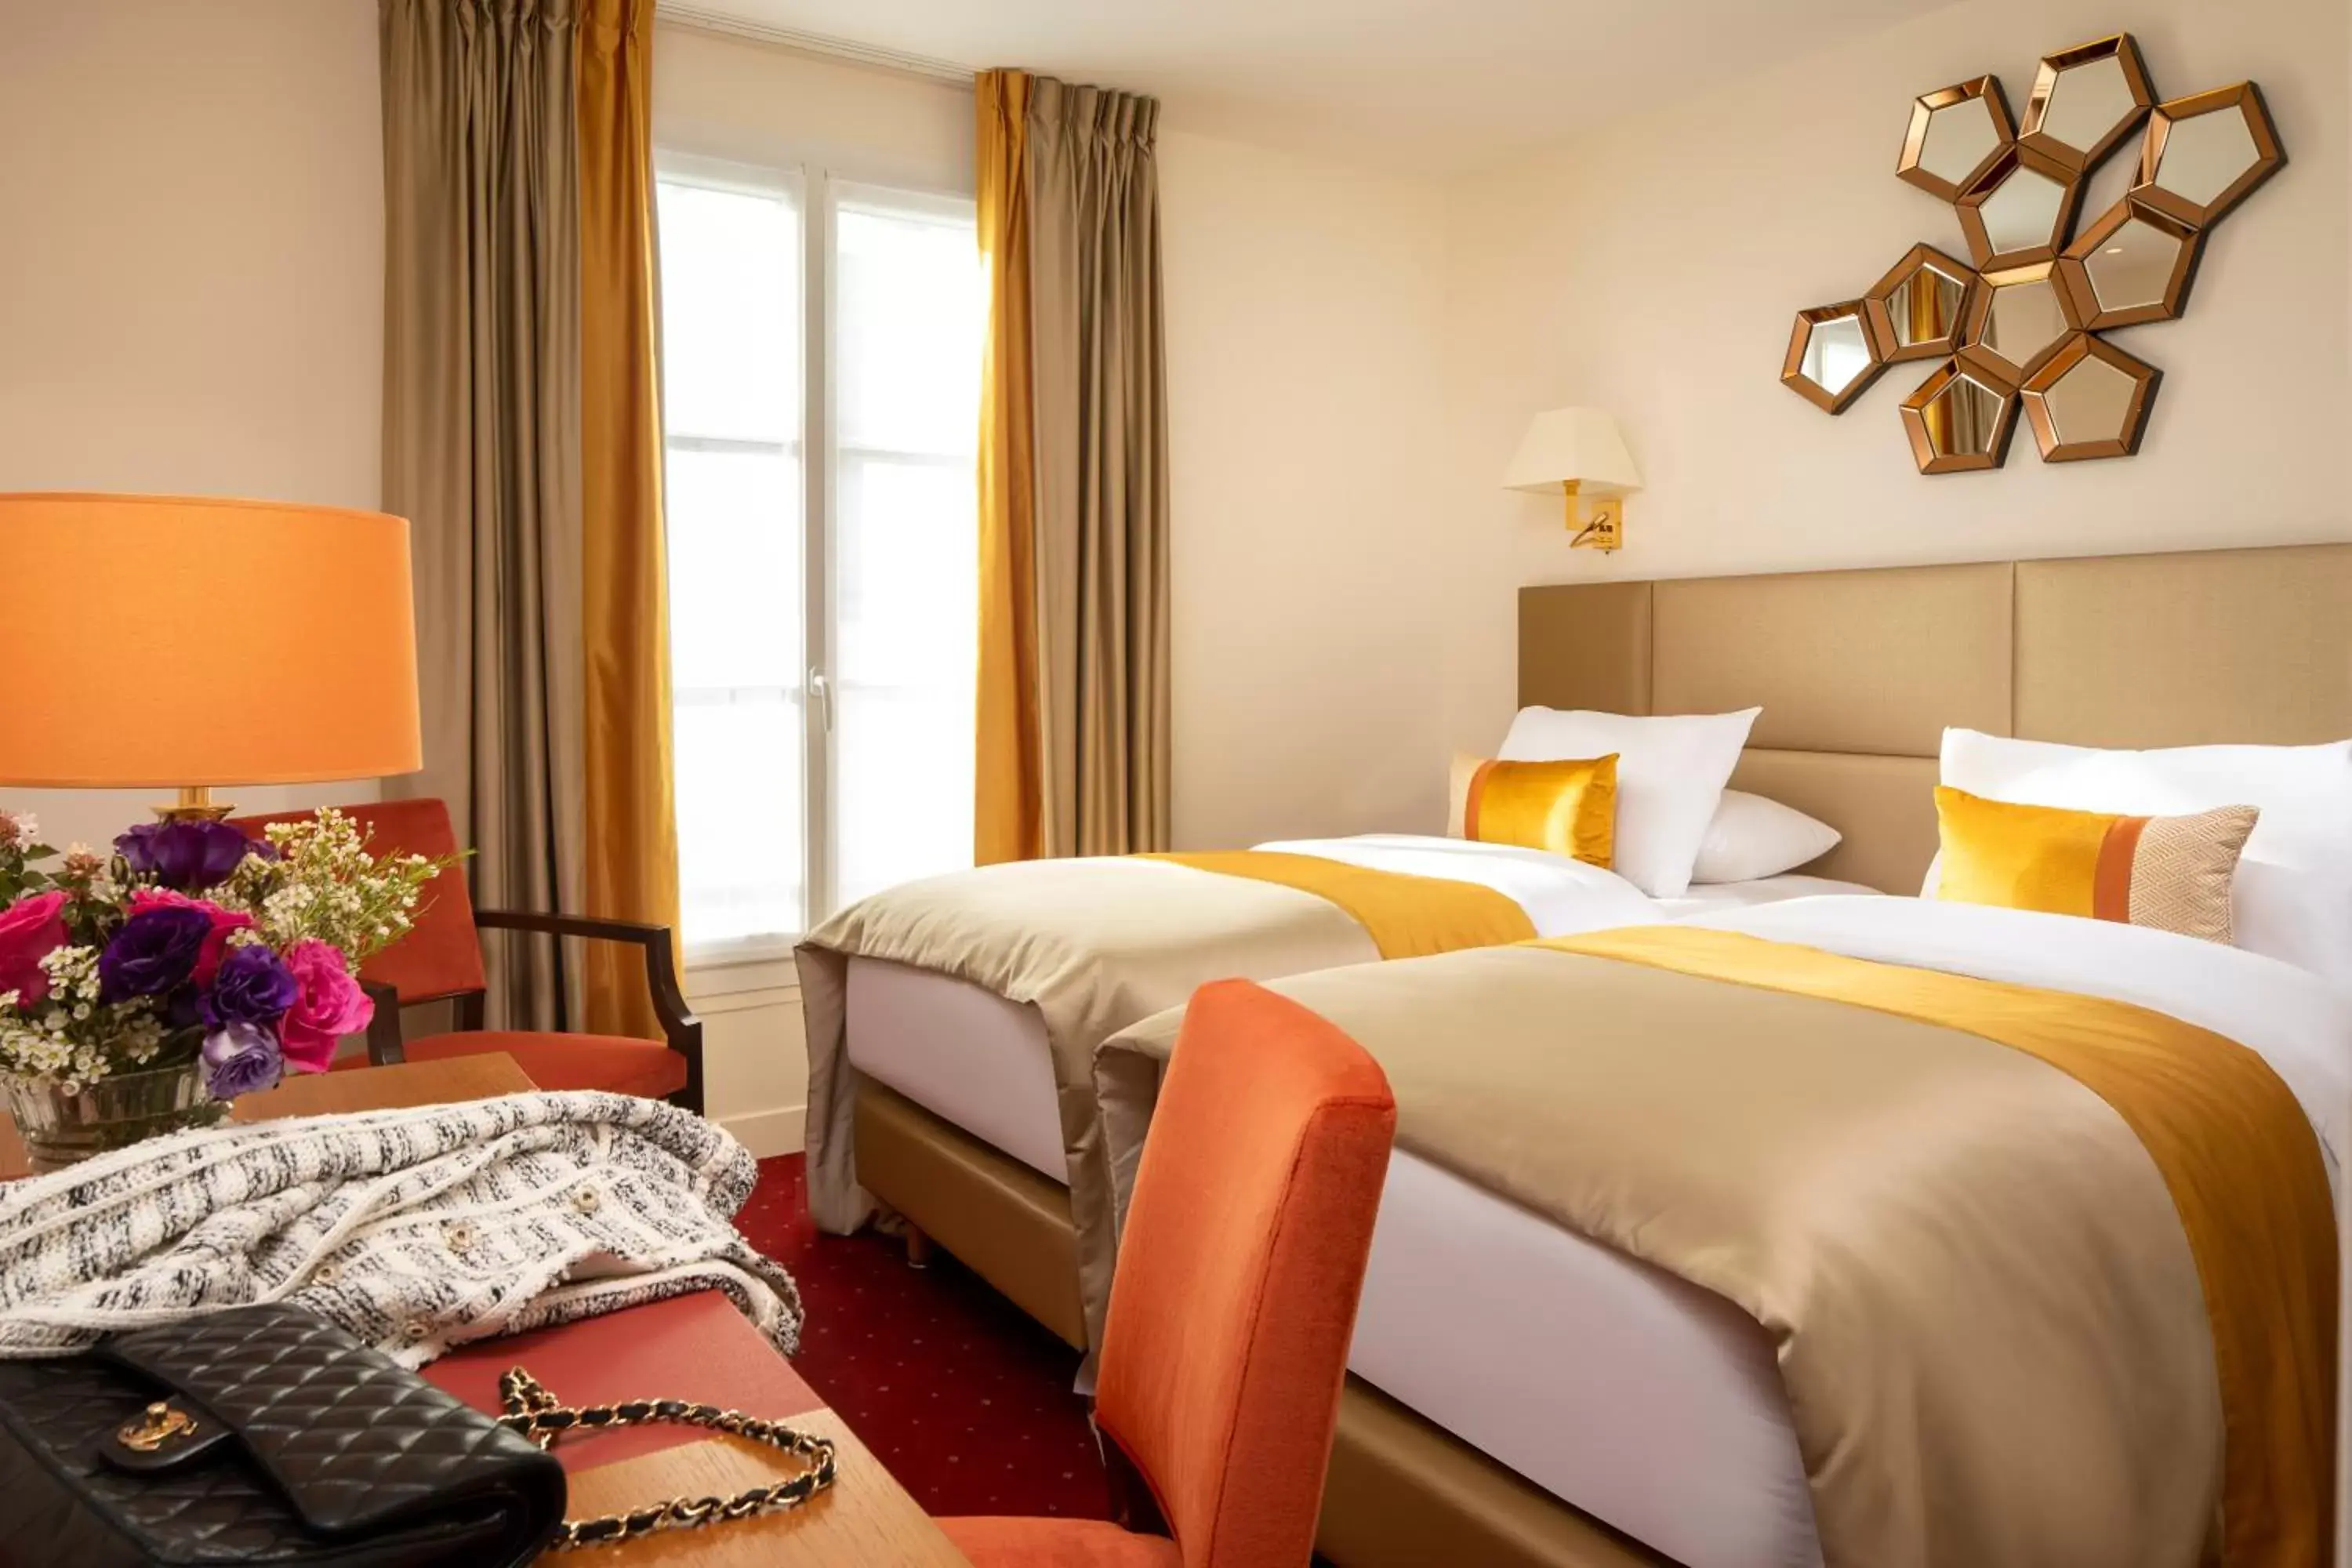 Bed in Hotel De Suede Saint Germain